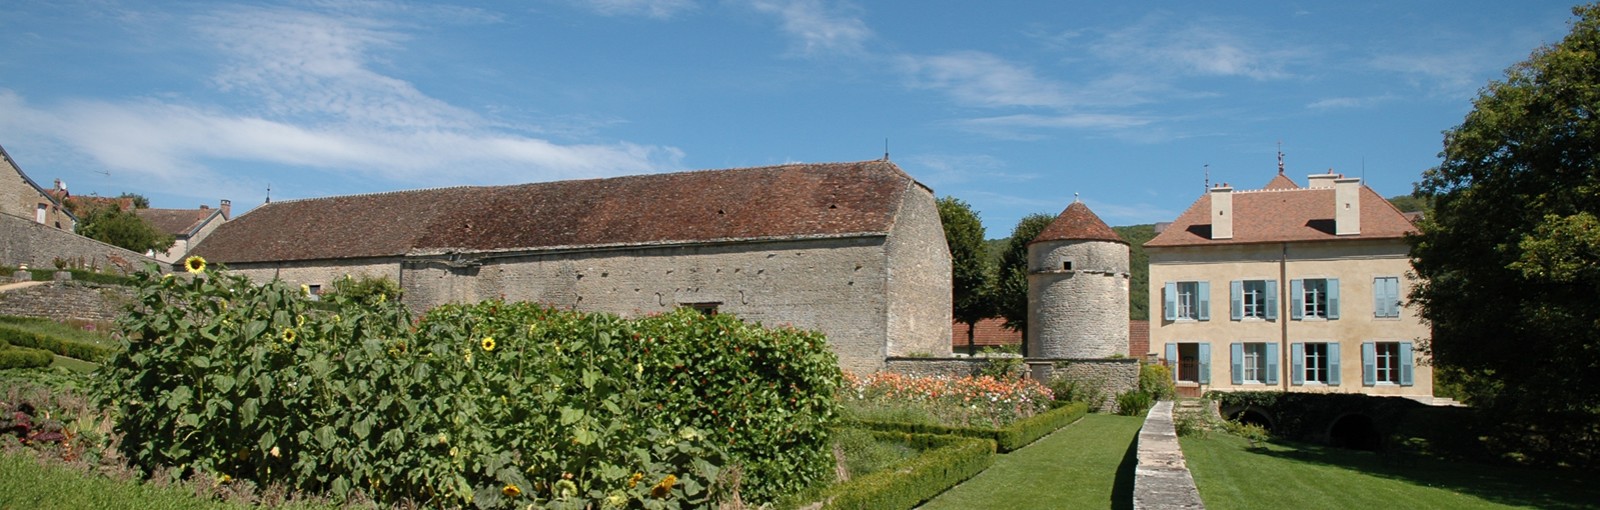 Bourgogne - Château privé recevant des hôtes